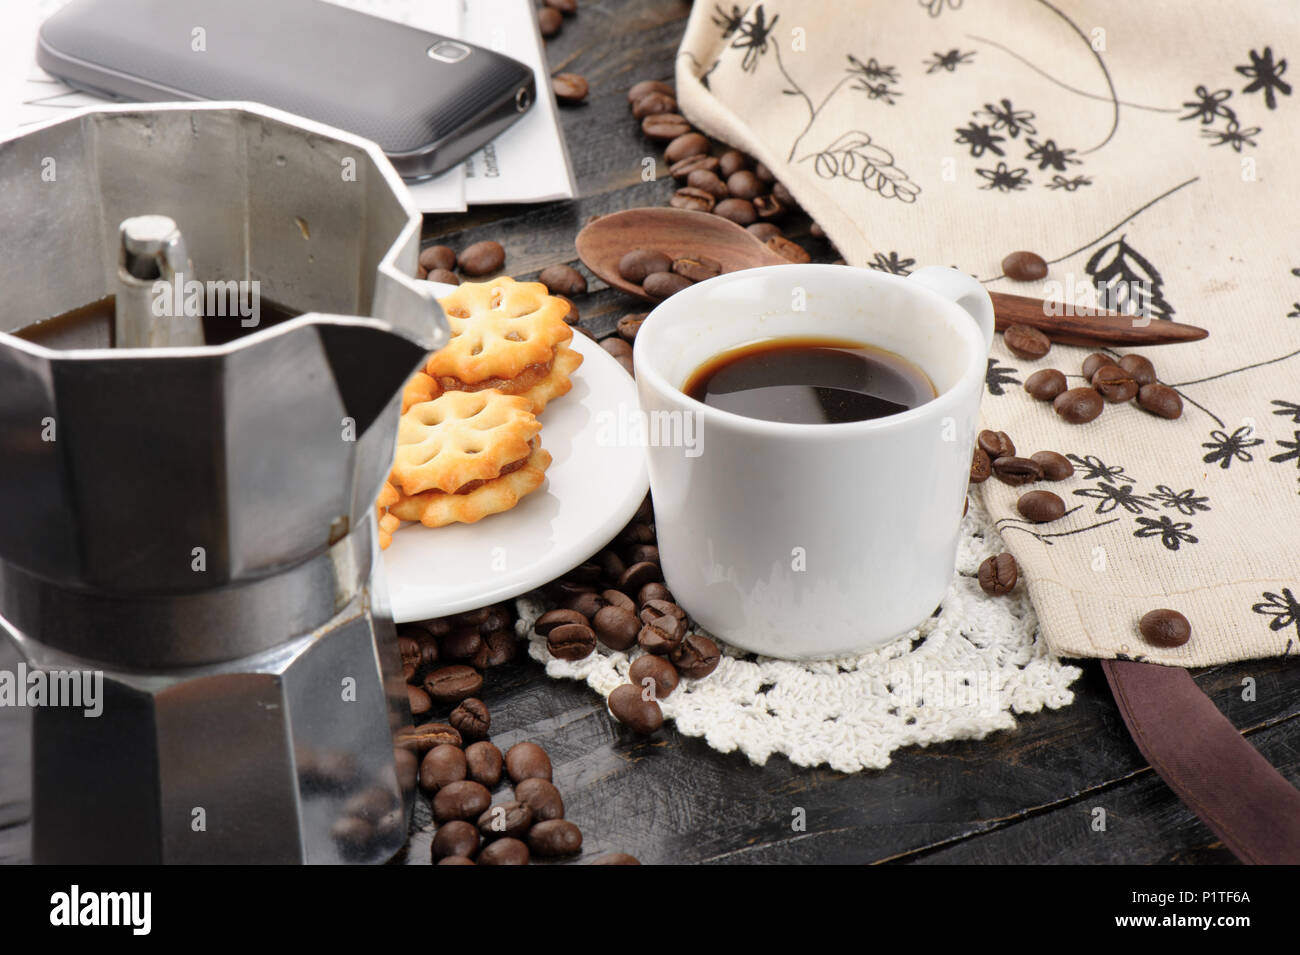 Gli amanti del caffe' concetto, una tazza di caffè espresso Foto Stock